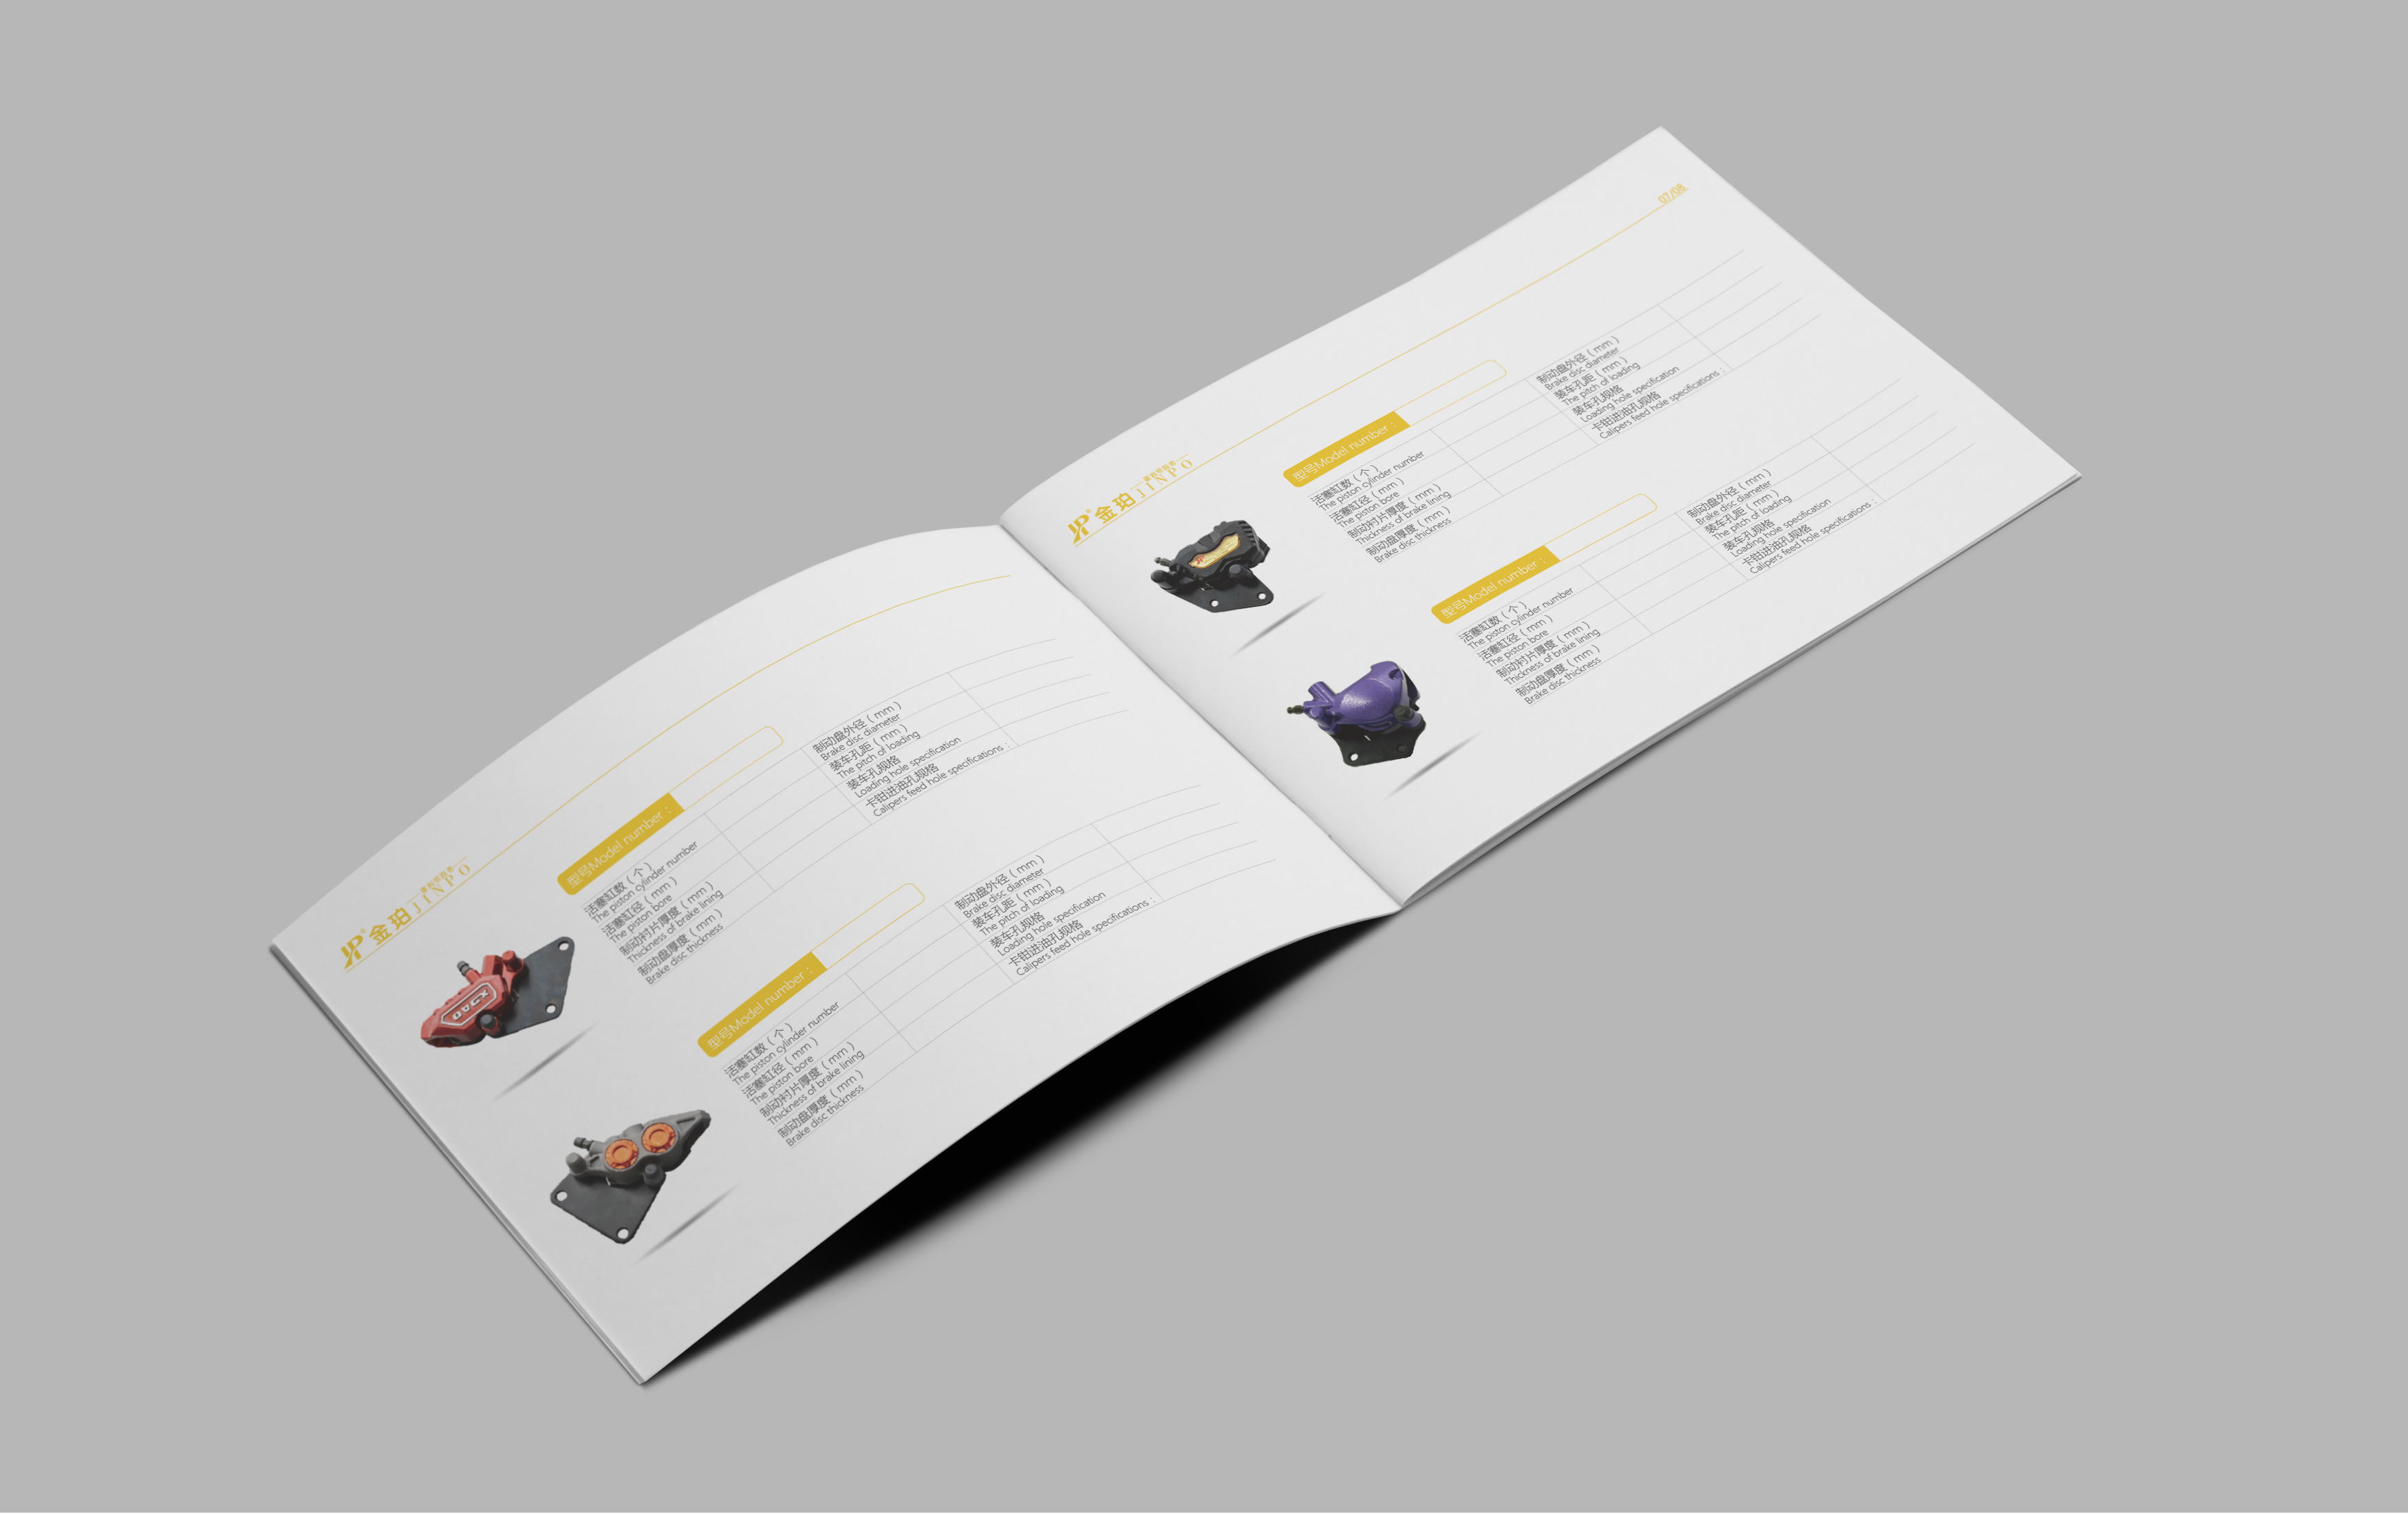 横板产品画册设计-无锡样本画册设计印刷丨无锡商标丨